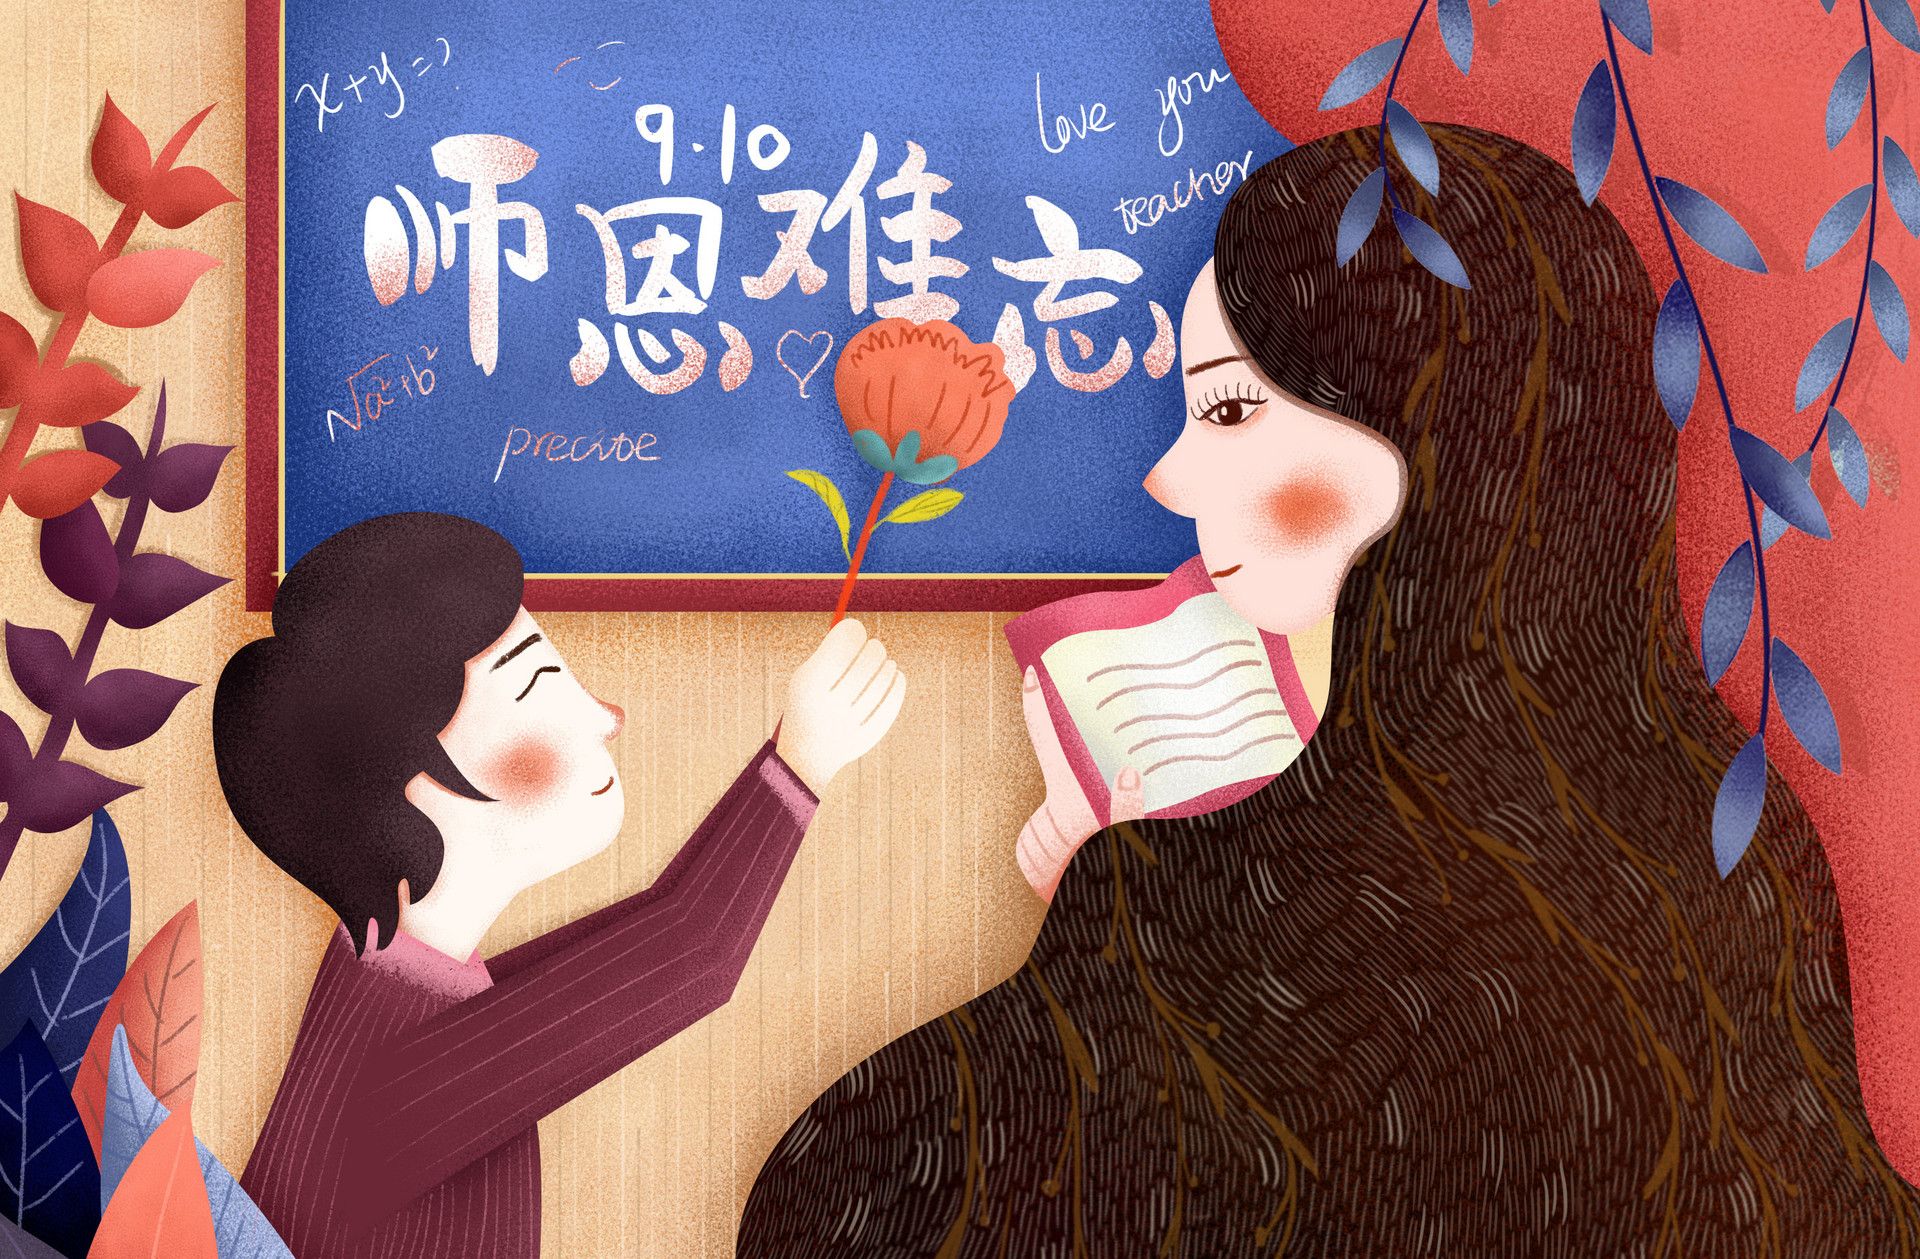 《老师你好》：新文道祝全体老师教师节快乐_凤凰网视频_凤凰网